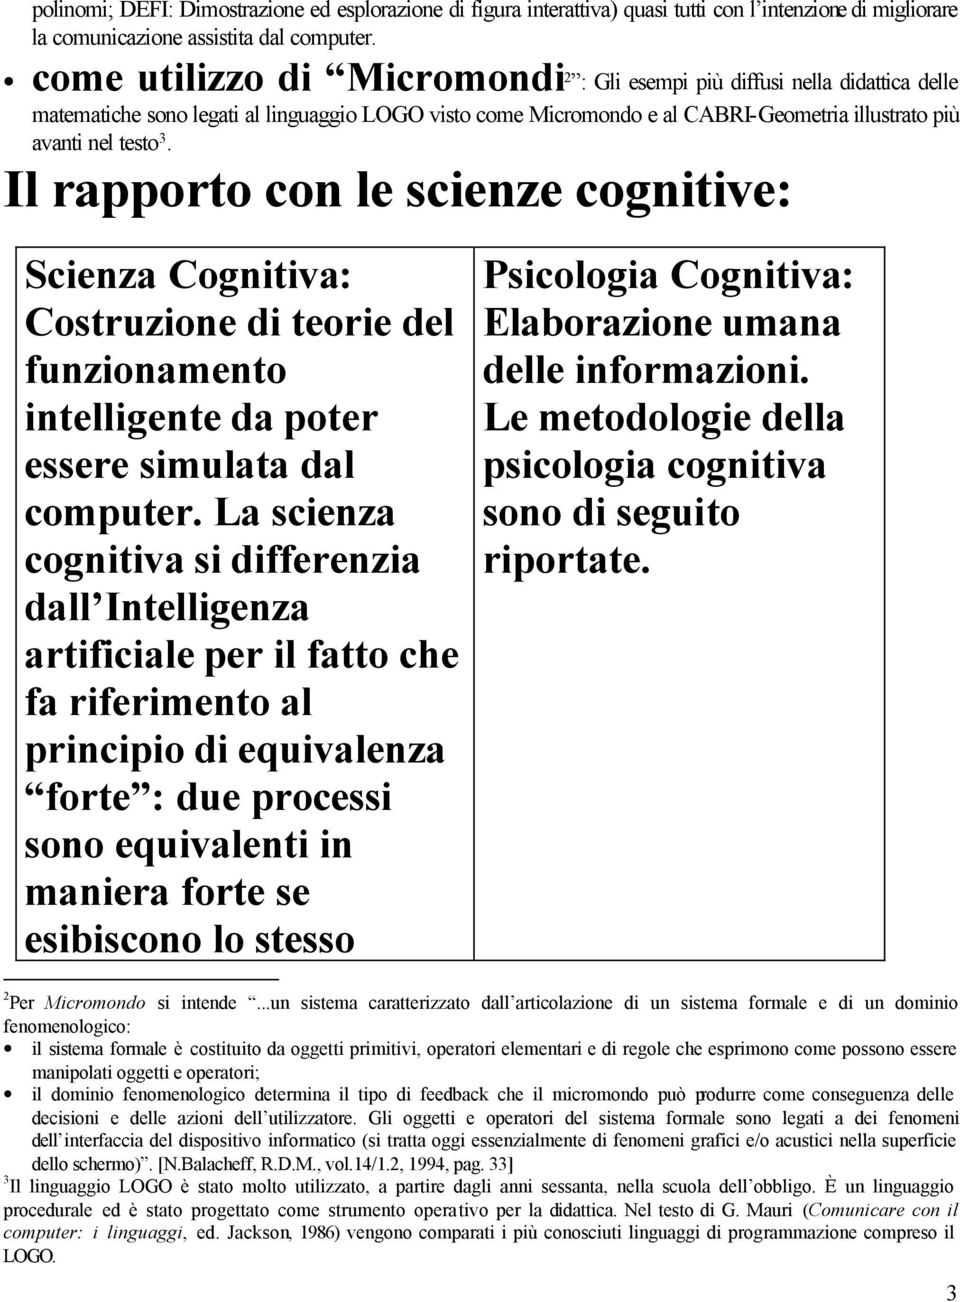 Il rapporto con le scienze cognitive: Scienza Cognitiva: Costruzione di teorie del funzionamento intelligente da poter essere simulata dal computer.